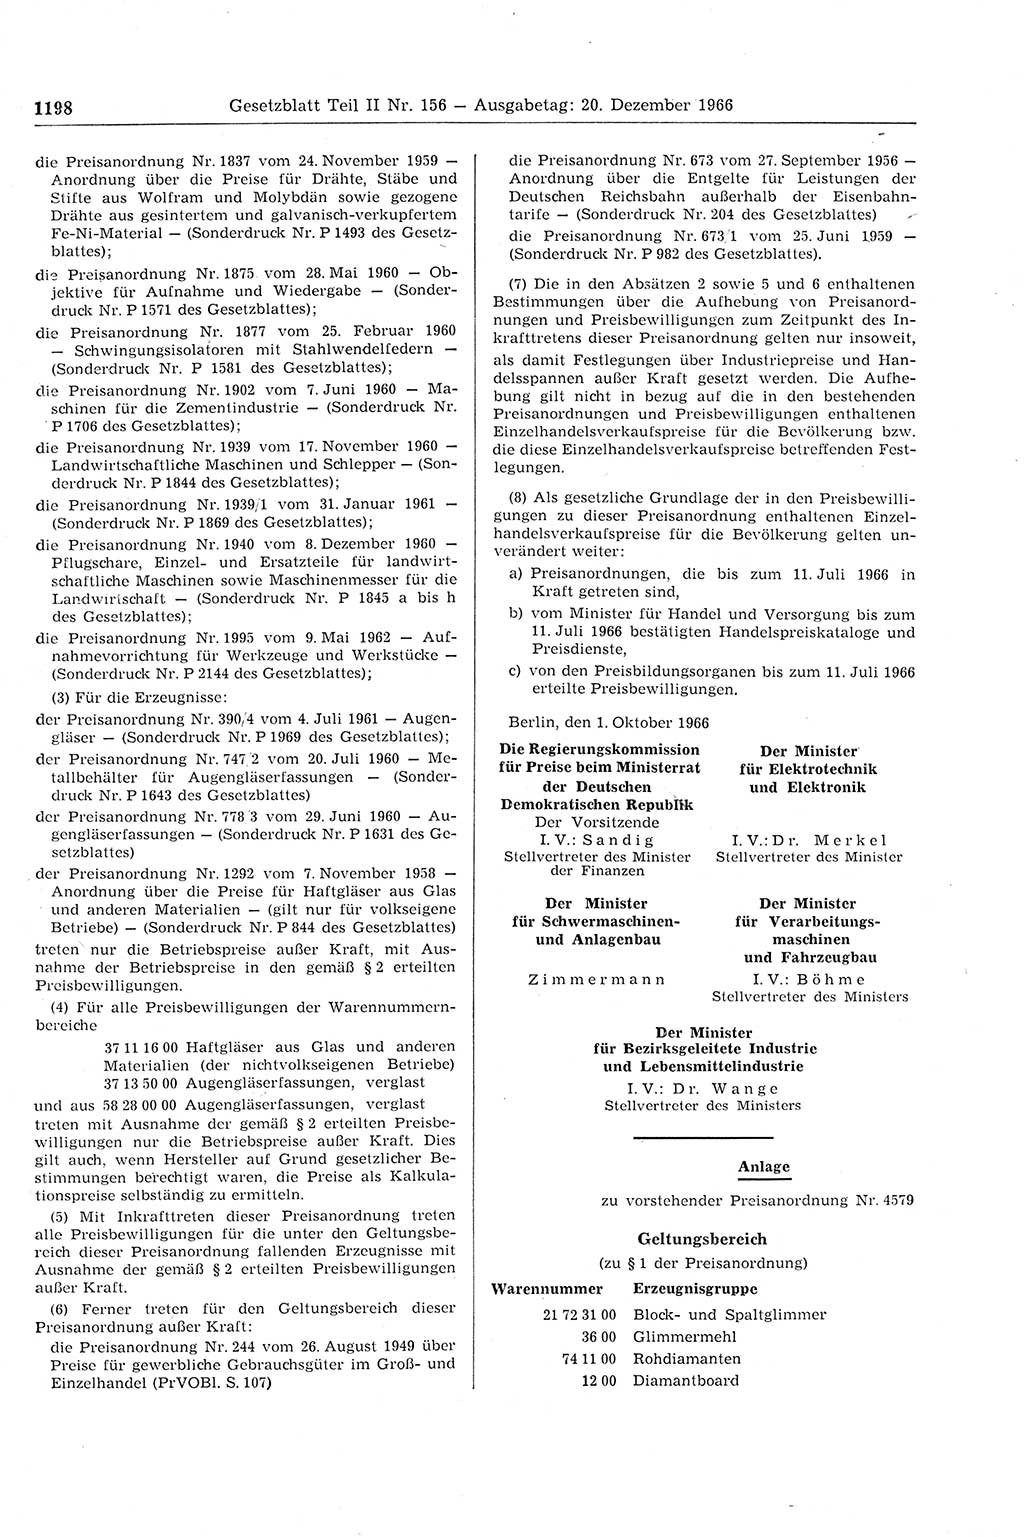 Gesetzblatt (GBl.) der Deutschen Demokratischen Republik (DDR) Teil ⅠⅠ 1966, Seite 1198 (GBl. DDR ⅠⅠ 1966, S. 1198)